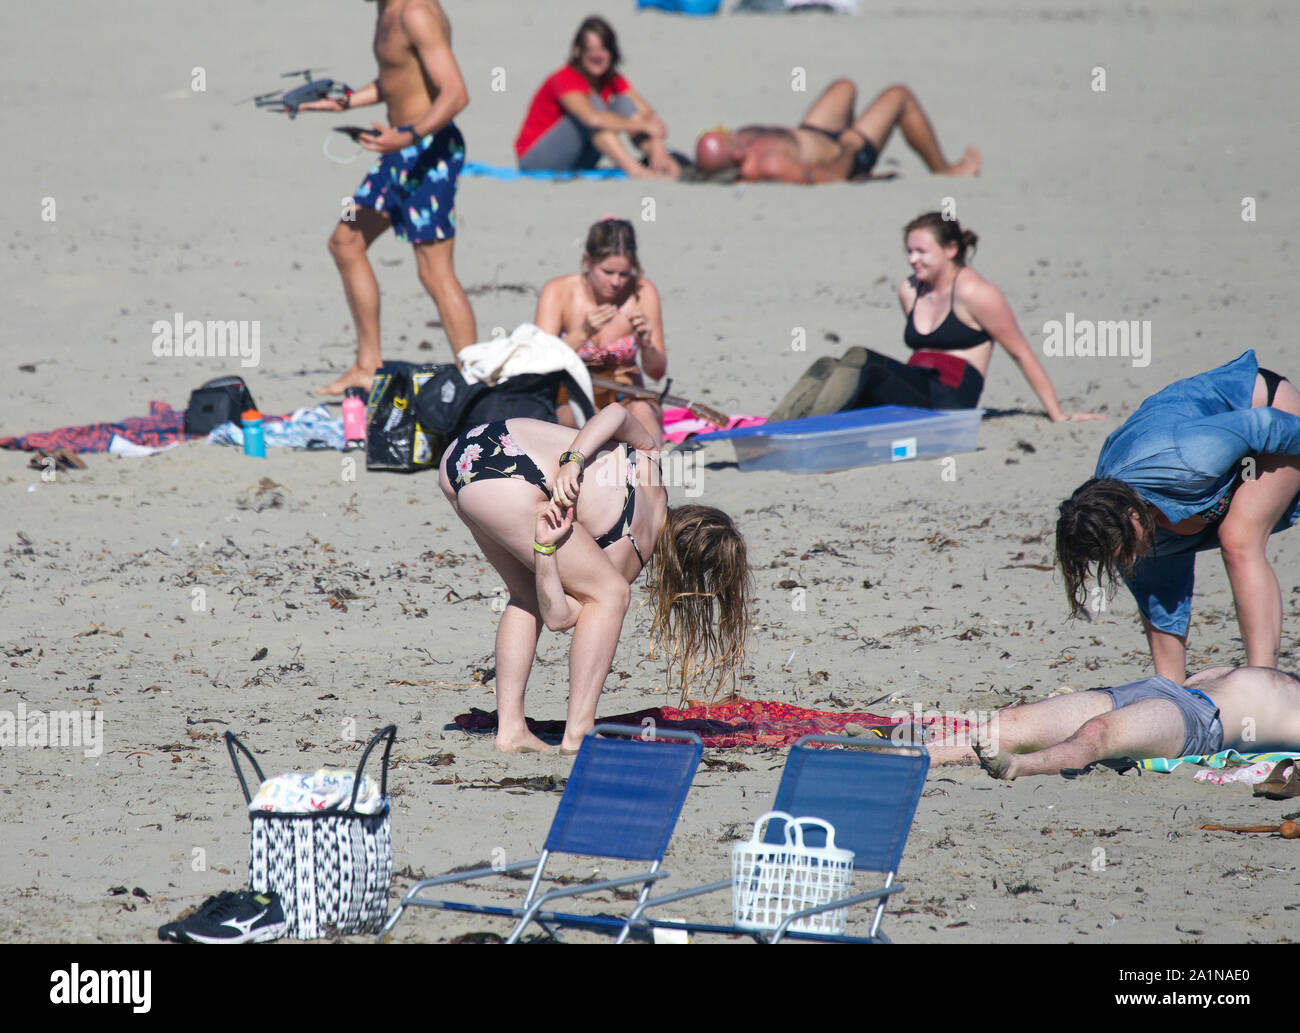 Girl in Bikini Practicing Twister game Stock Photo - Alamy